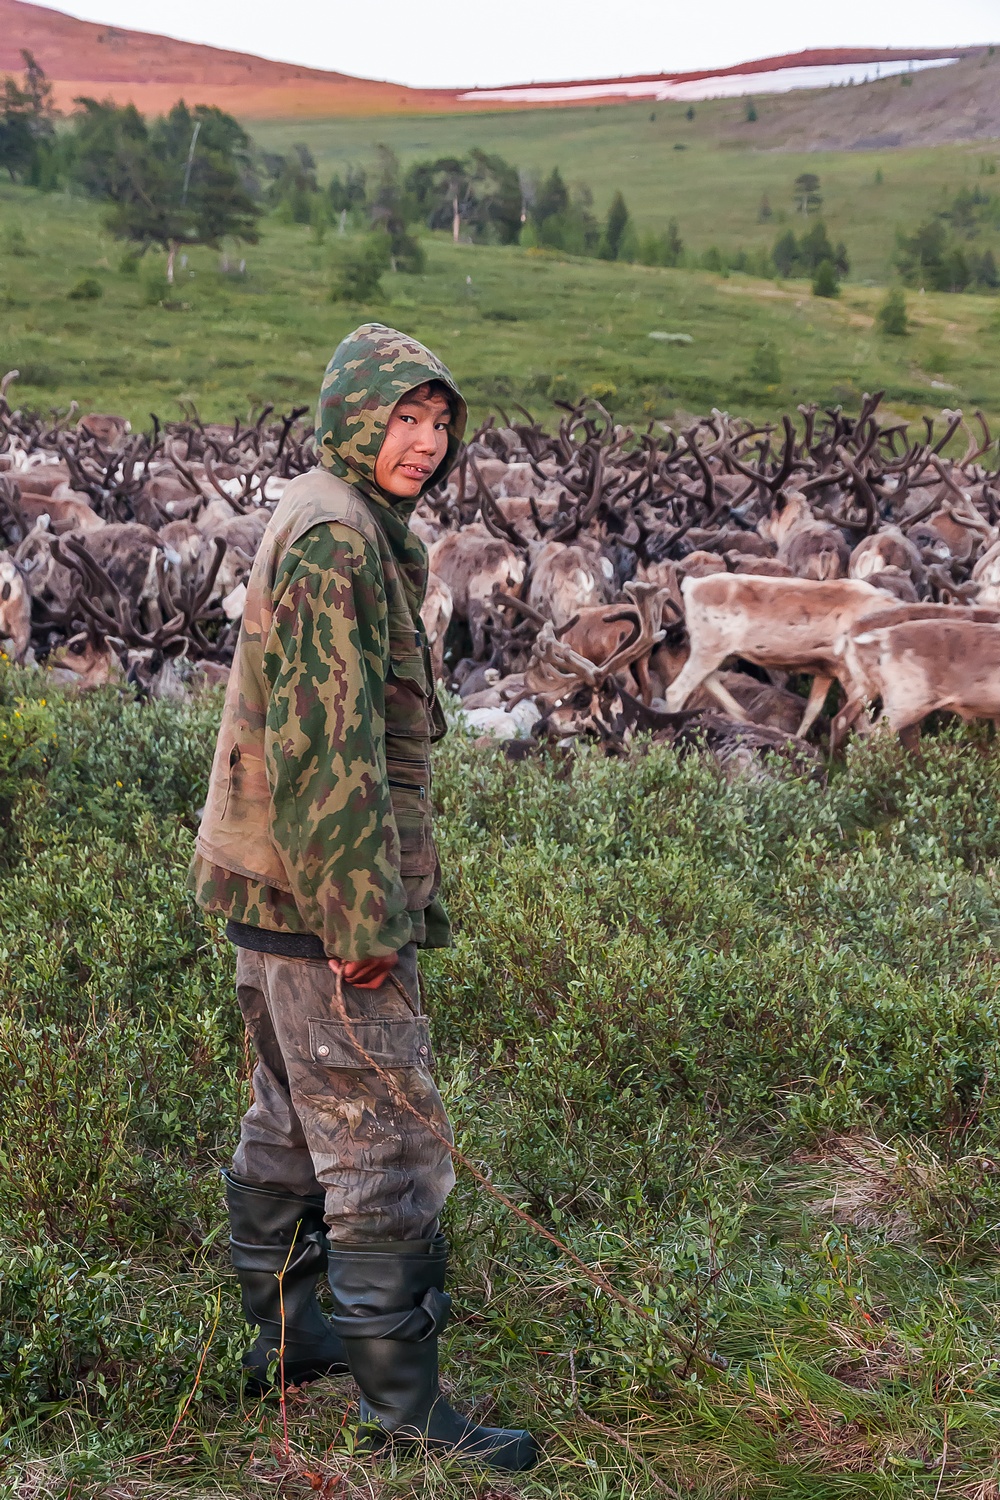 Il existe actuellement deux genres de fermes de rennes, explique Kirill. Les premières sont appelées fermes familiales, elles sont exploitées par des gens pratiquant l’élevage de rennes depuis des générations. Pour eux, le troupeau est leur propriété, grâce à laquelle ils vivent et se nourrissent.